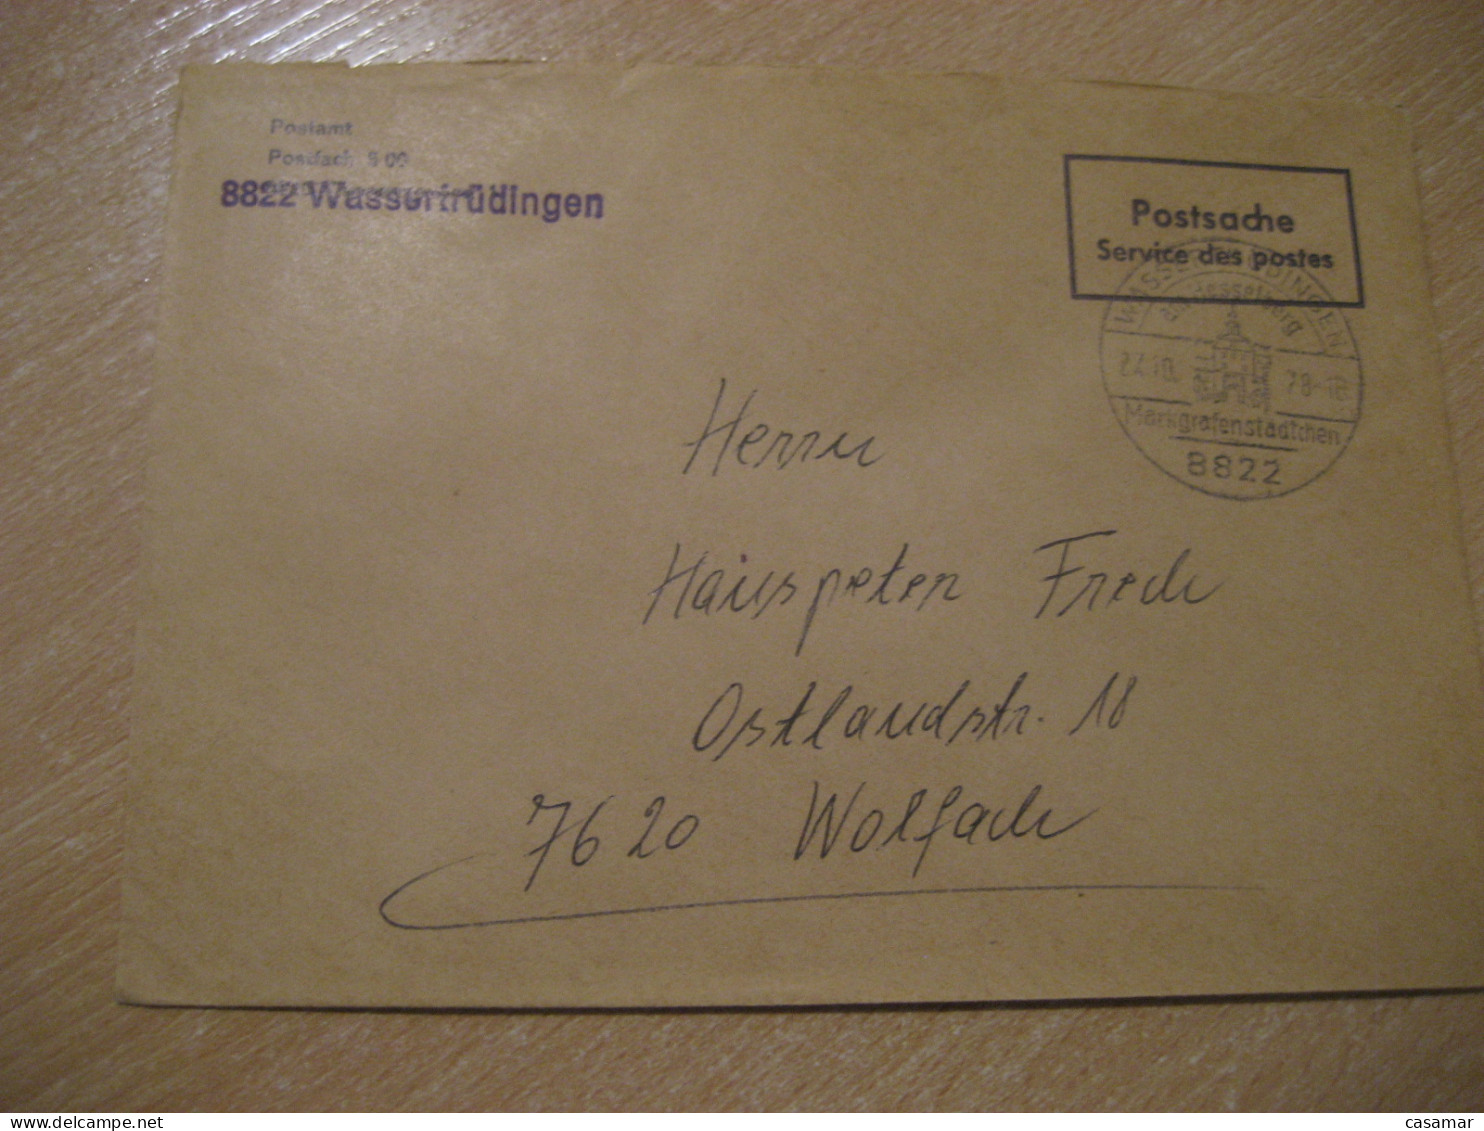 WASSERTRUDINGEN 1978 To Wolfach Postage Paid Cancel Cover GERMANY - Brieven En Documenten